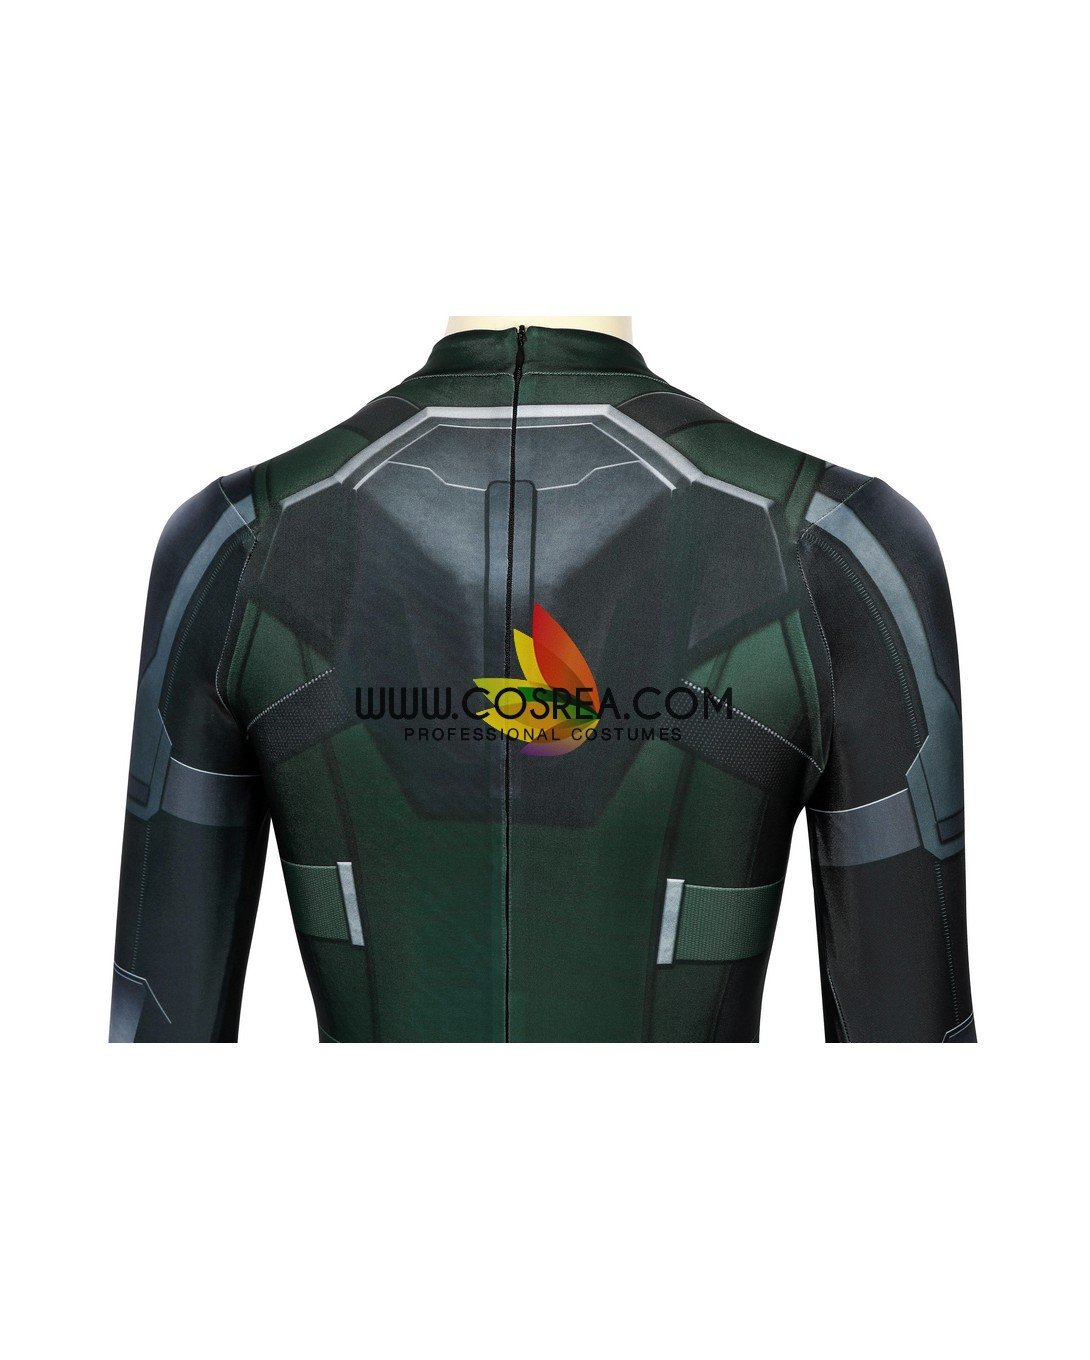 Black Widow Movie Stealth Green Version Digital Printed Bodysuit